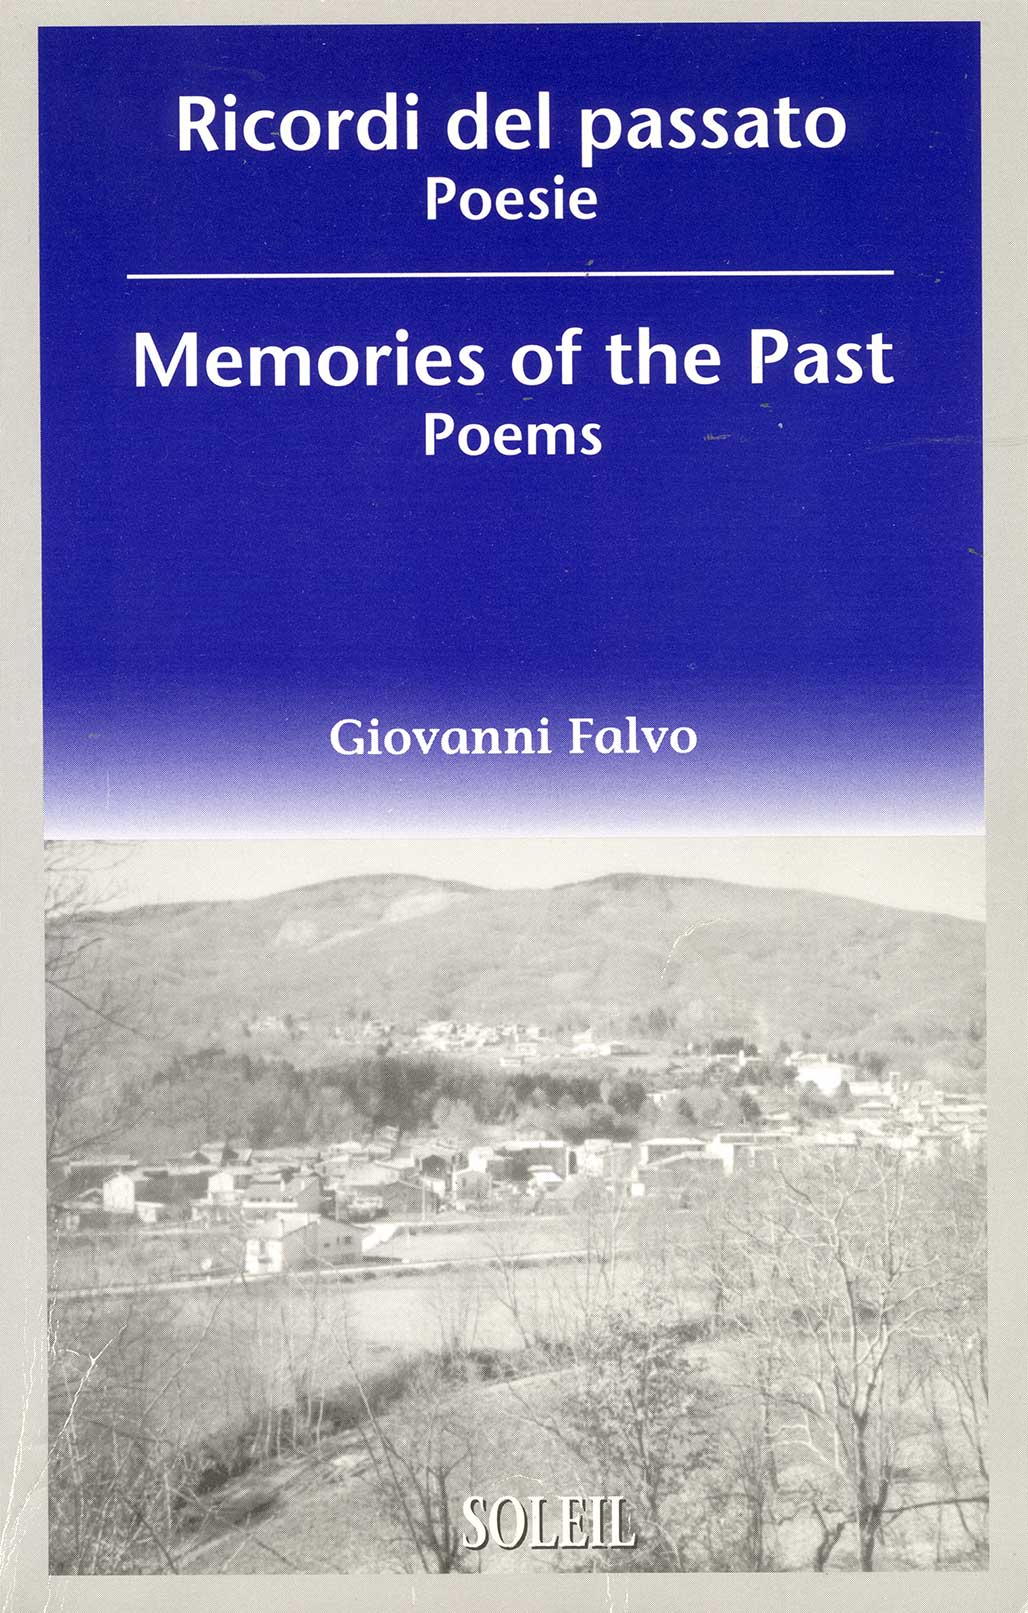 Une couverture de livre bleu avec l’écriture en italien et la traduction en anglais : Memories of the Past Poems.